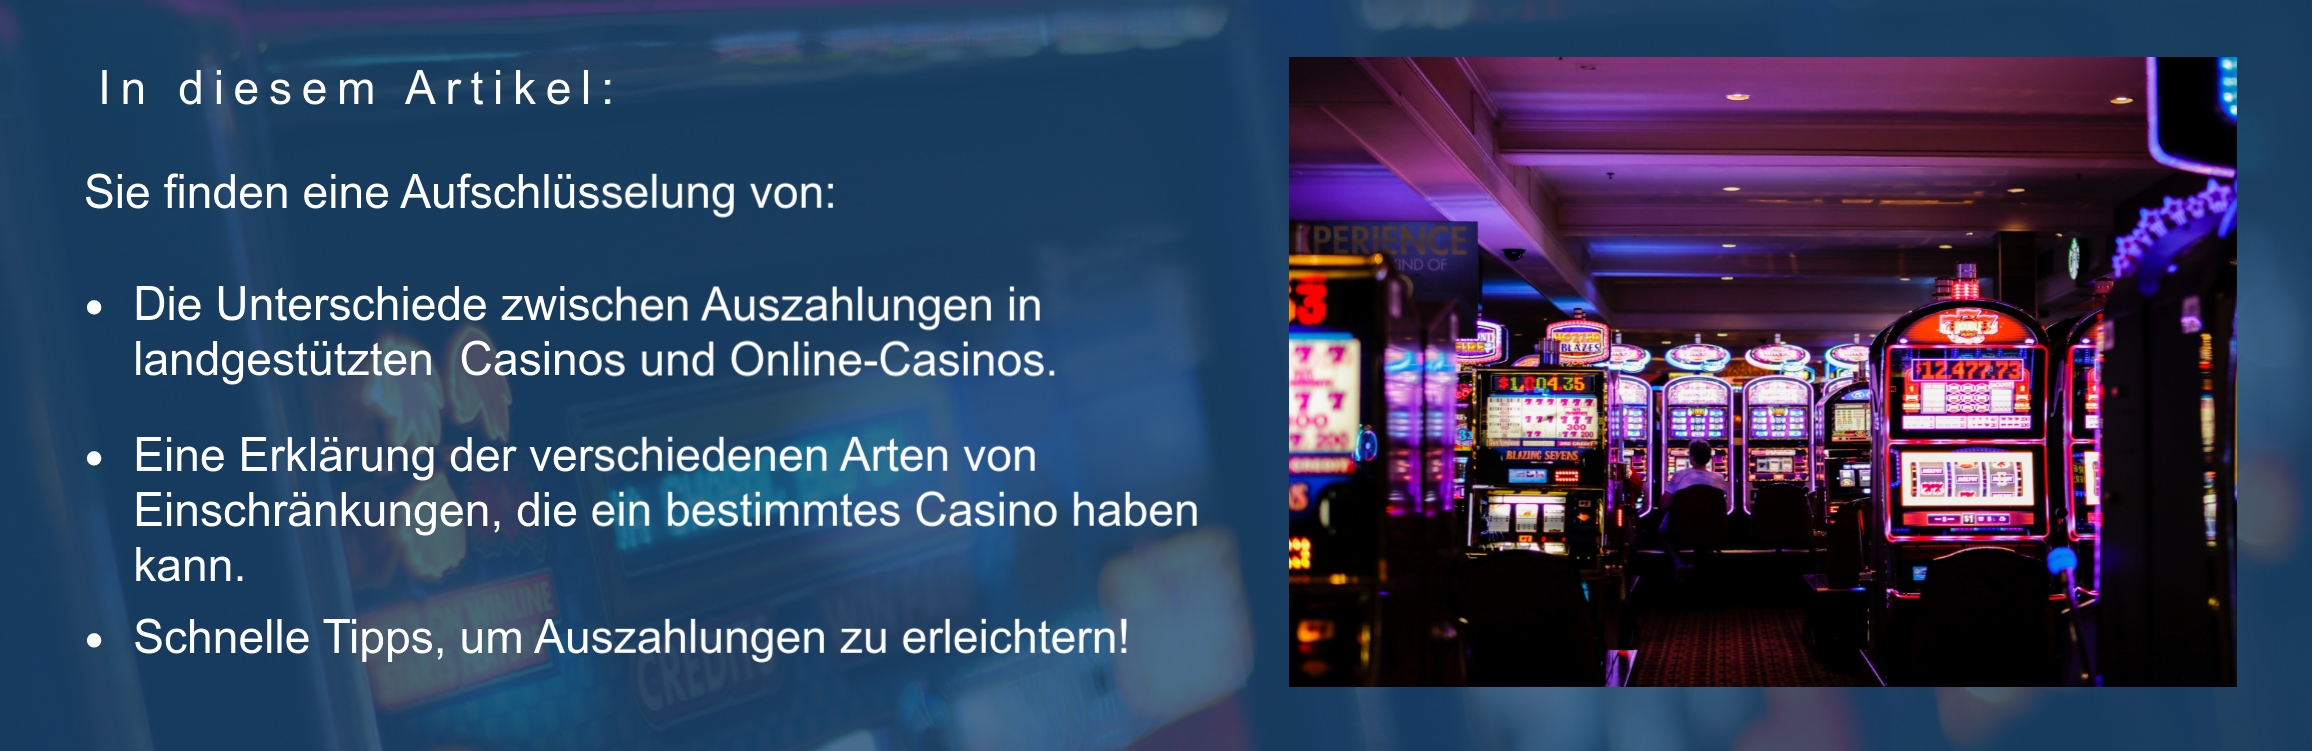 Online Casino-Eu Auszahlung